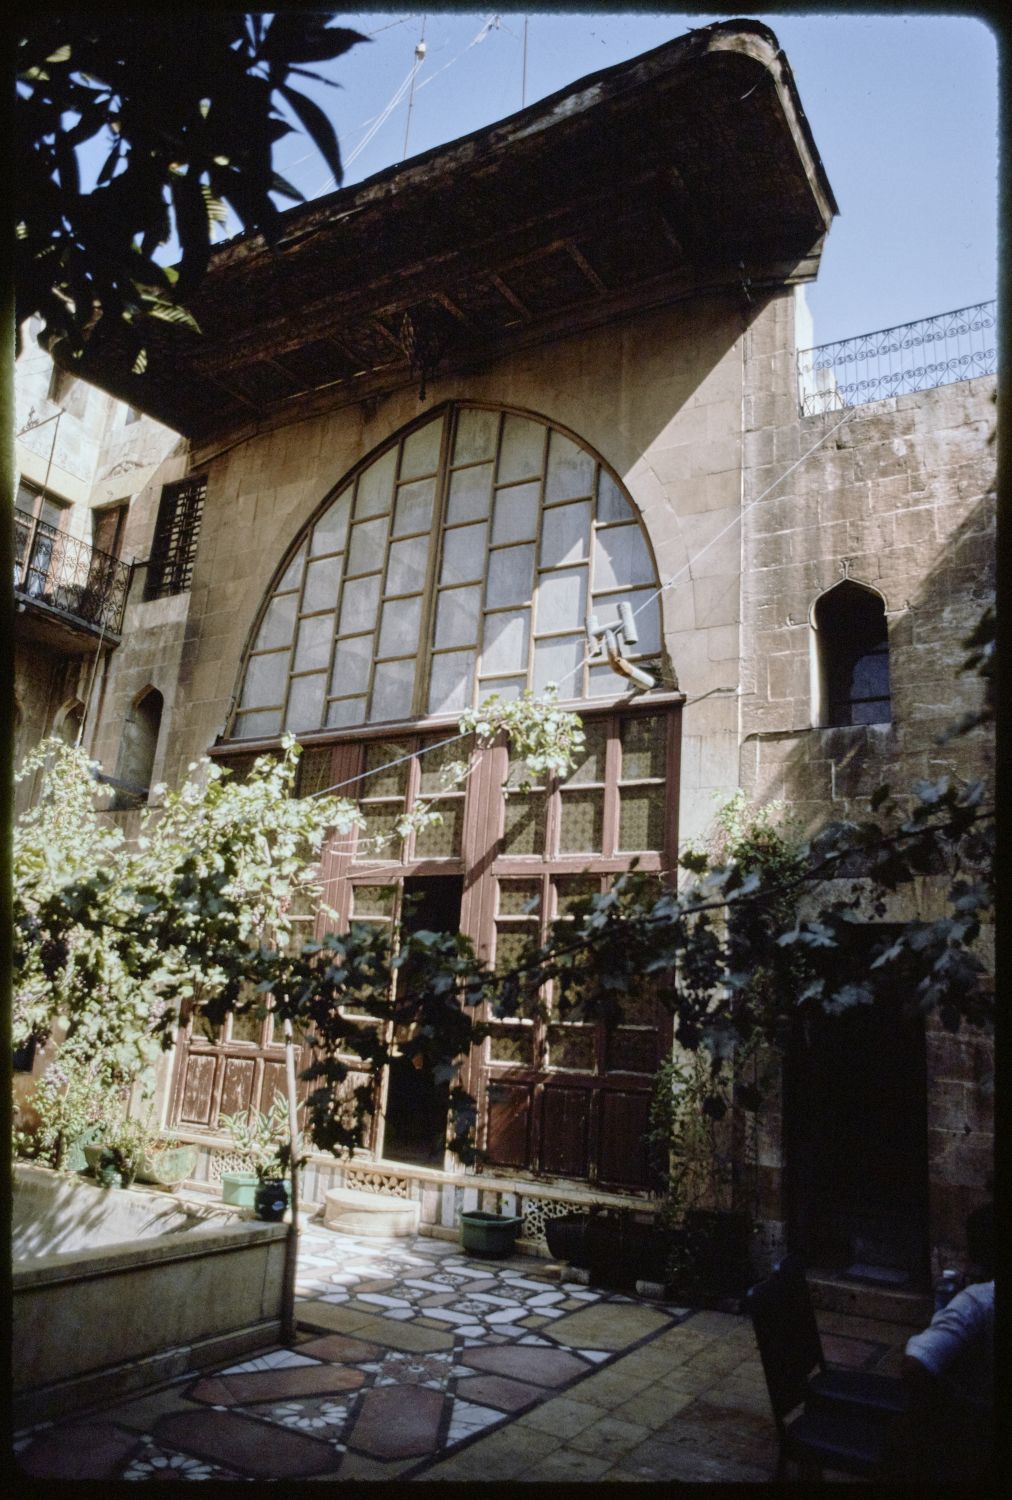 Facade of iwan facing onto courtyard.